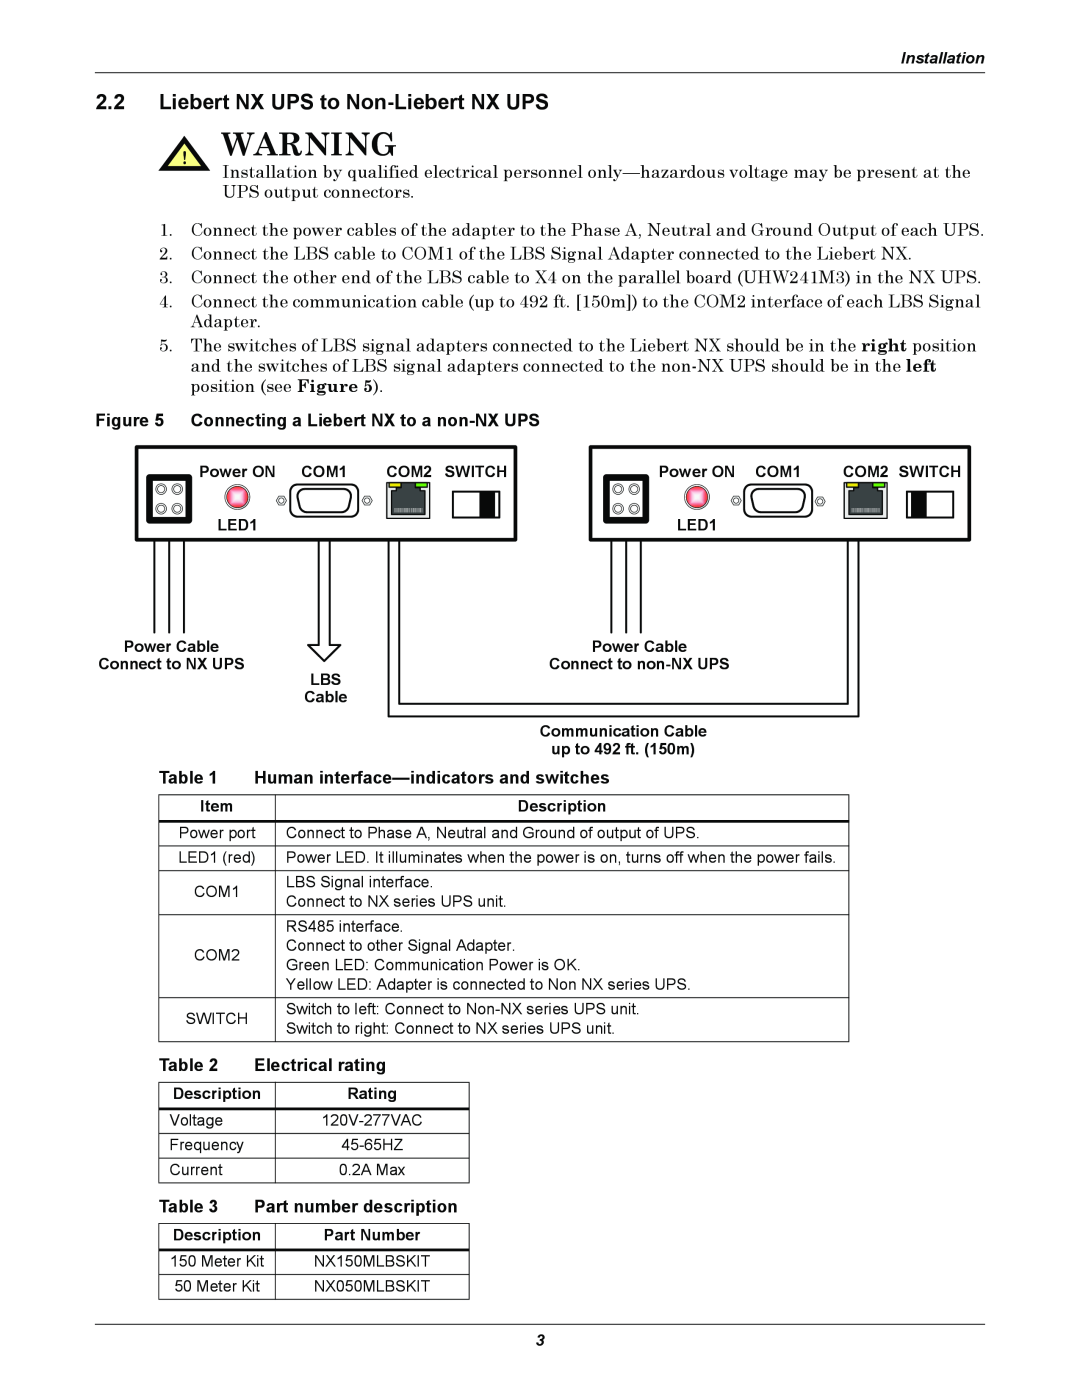 Liebert Extender/Adapter Liebert NX UPS to Non-Liebert NX UPS, Connecting a Liebert NX to a non-NX UPS, Electrical rating 